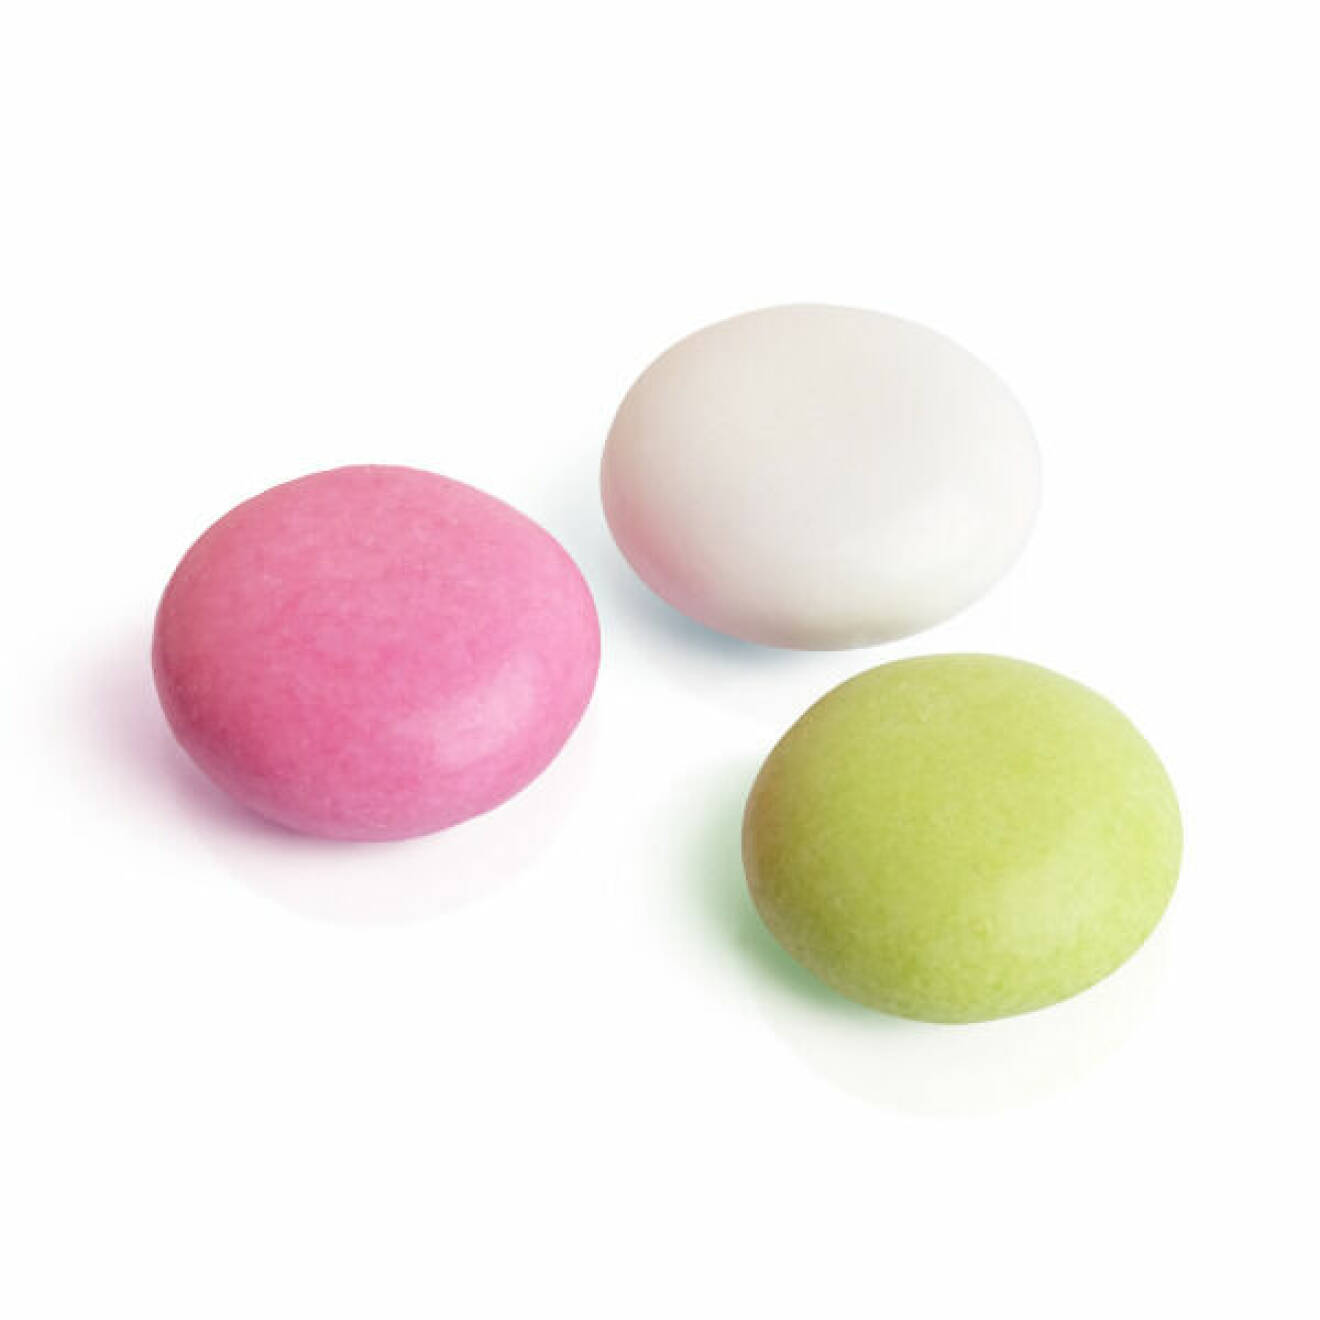 Peps mint-godis i rosa vitt och grönt